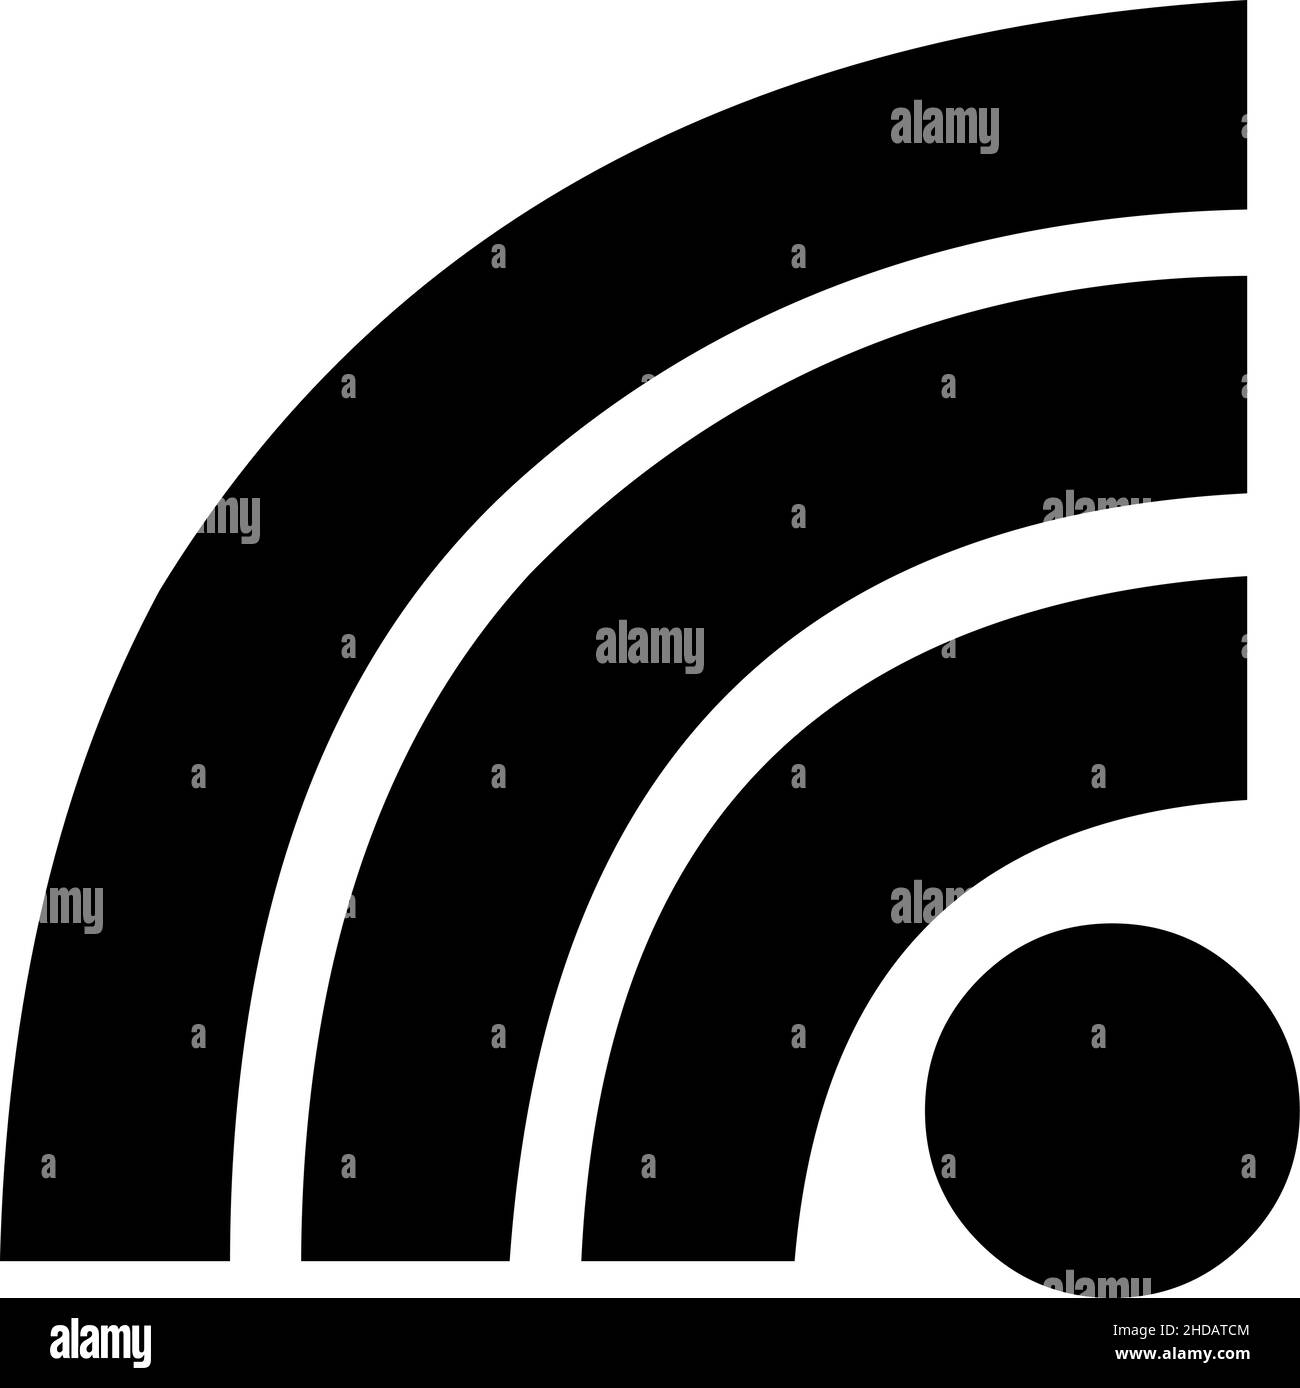 Illustrazione vettoriale di logo, simbolo o icona di wi-fi connesso Illustrazione Vettoriale